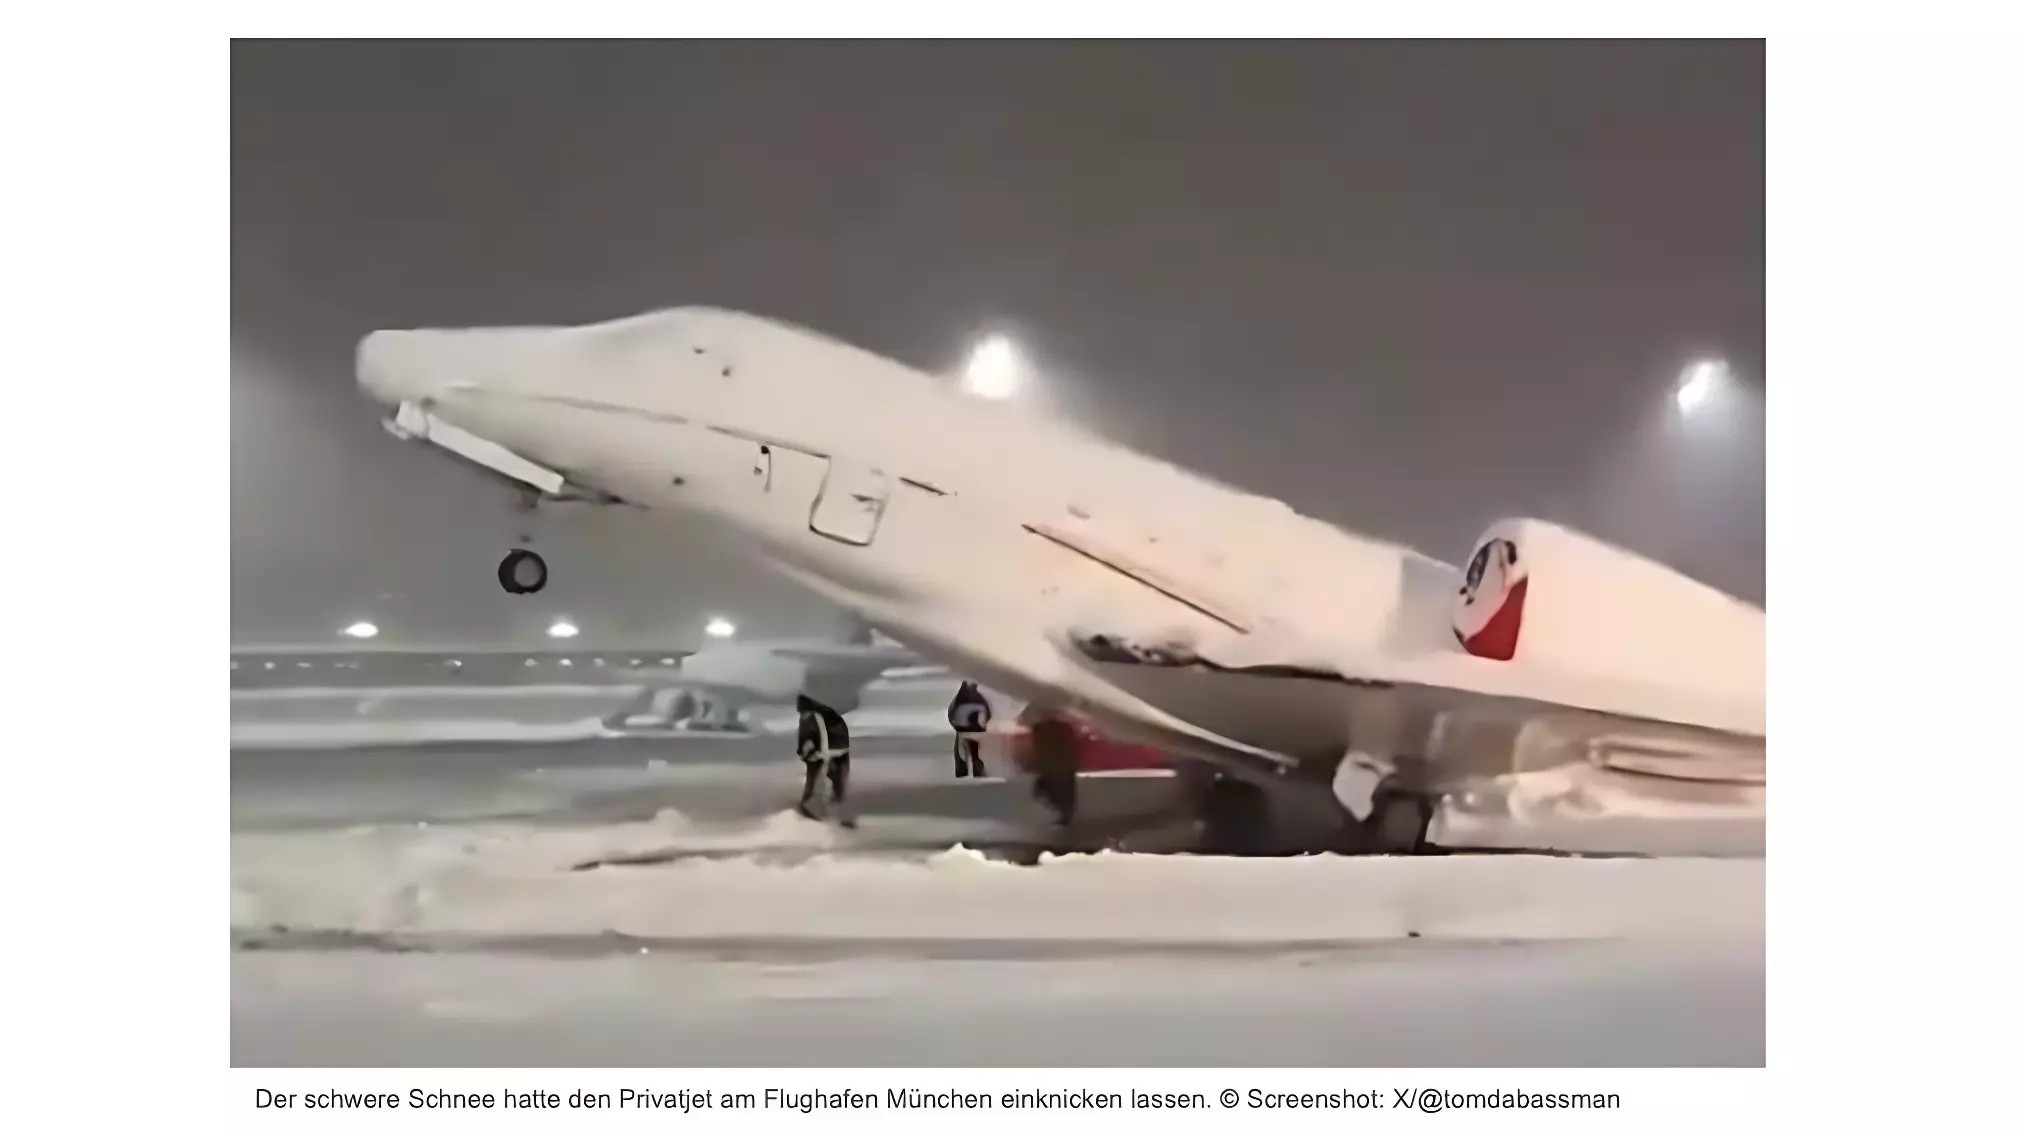 Застрявший в снегу частный самолет в аэропорту Мюнхена